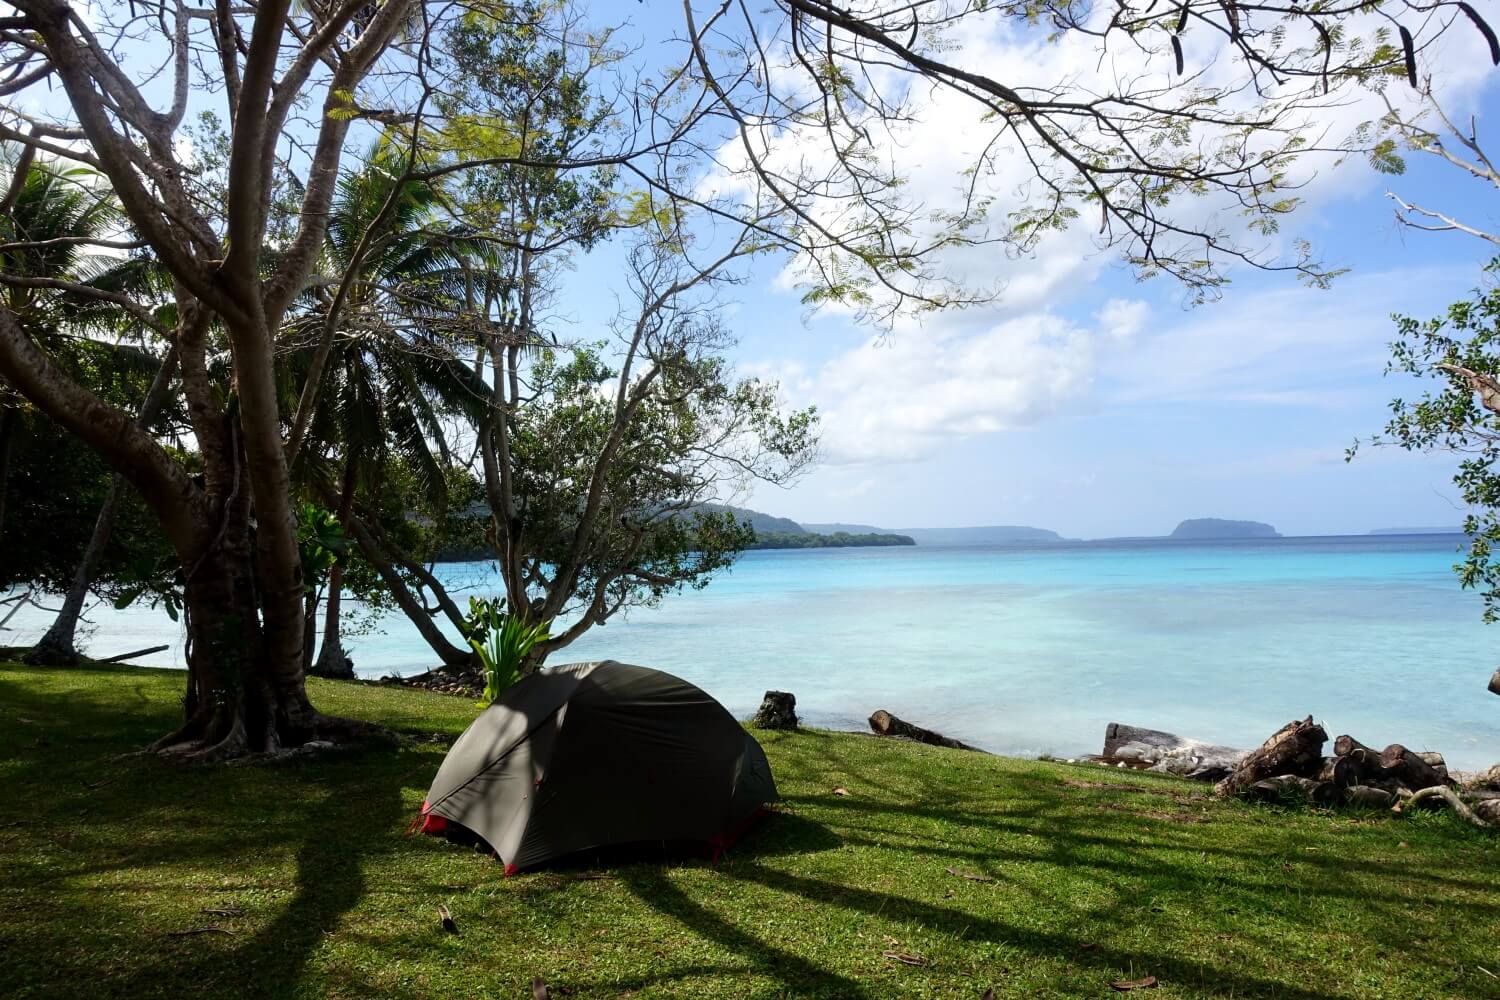 Hubba Hubba NX 2 Personenzelt beim Camping am Strand in Vanuatu.